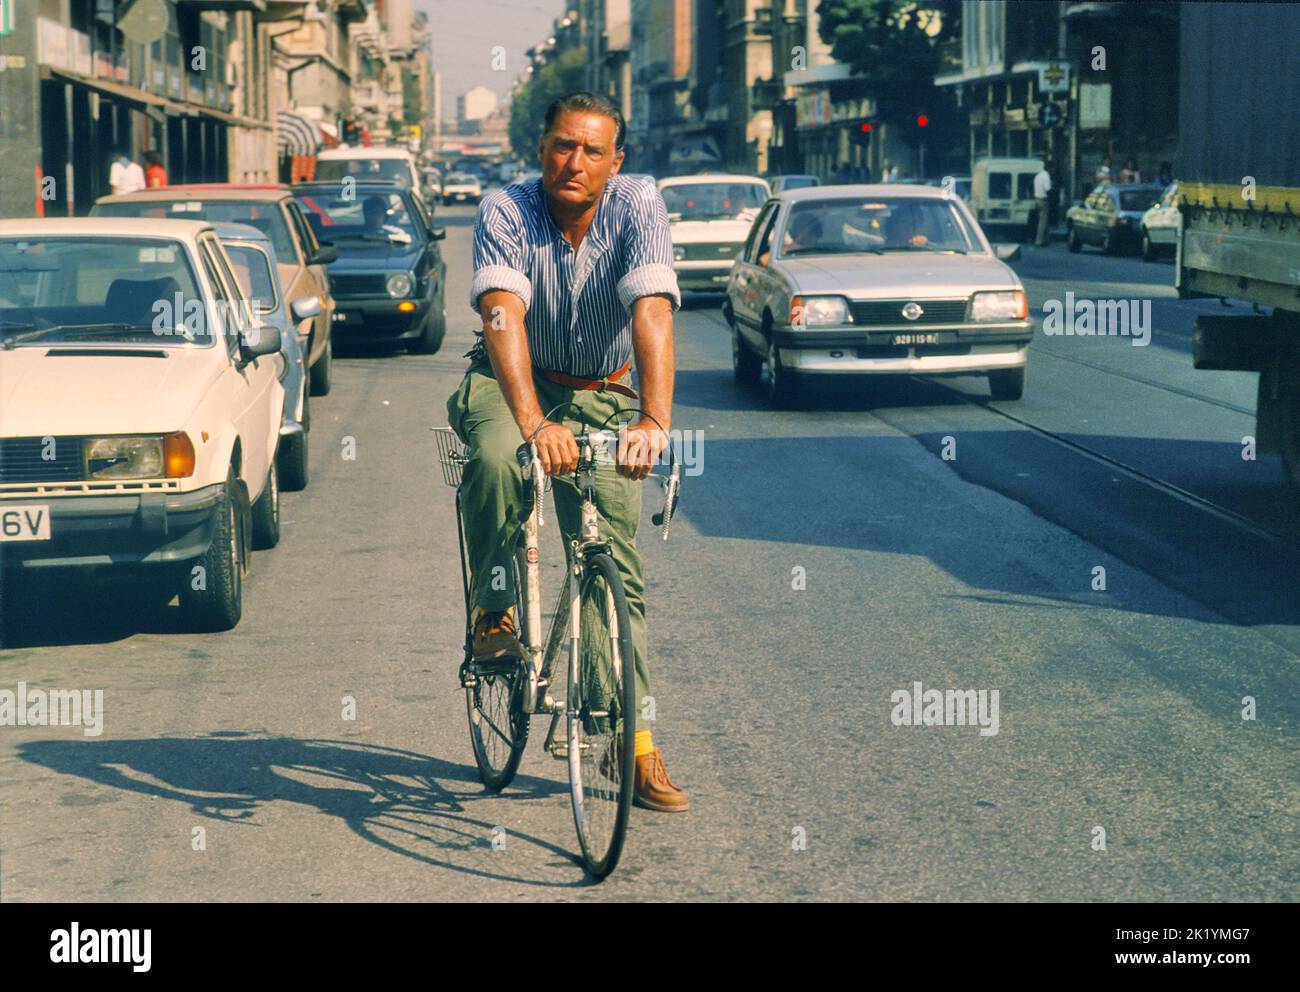 - Il pittore Emilio Tadini (1927-2002) in giro per la città in bicicletta (Milano, 1990)   - The painter Emilio Tadini (1927-2002) cycling around the city (Milan, 1990) Stock Photo